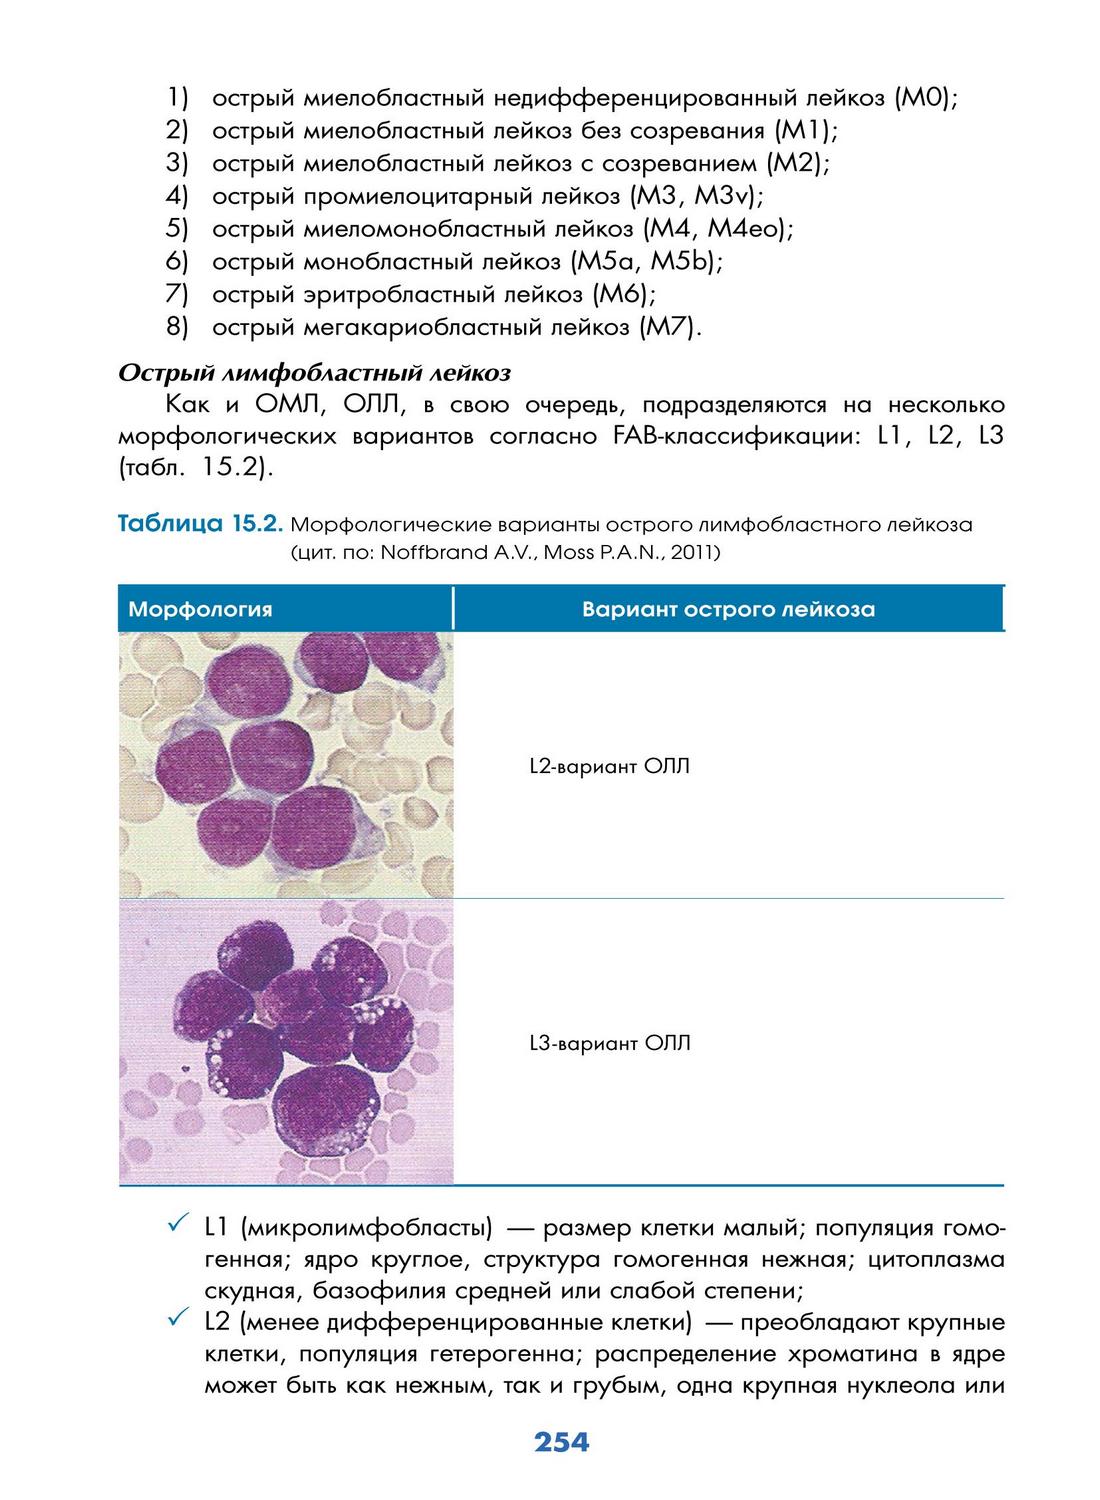 Таблица 15.2. Морфологические варианты острого лимфобластного лейкоза